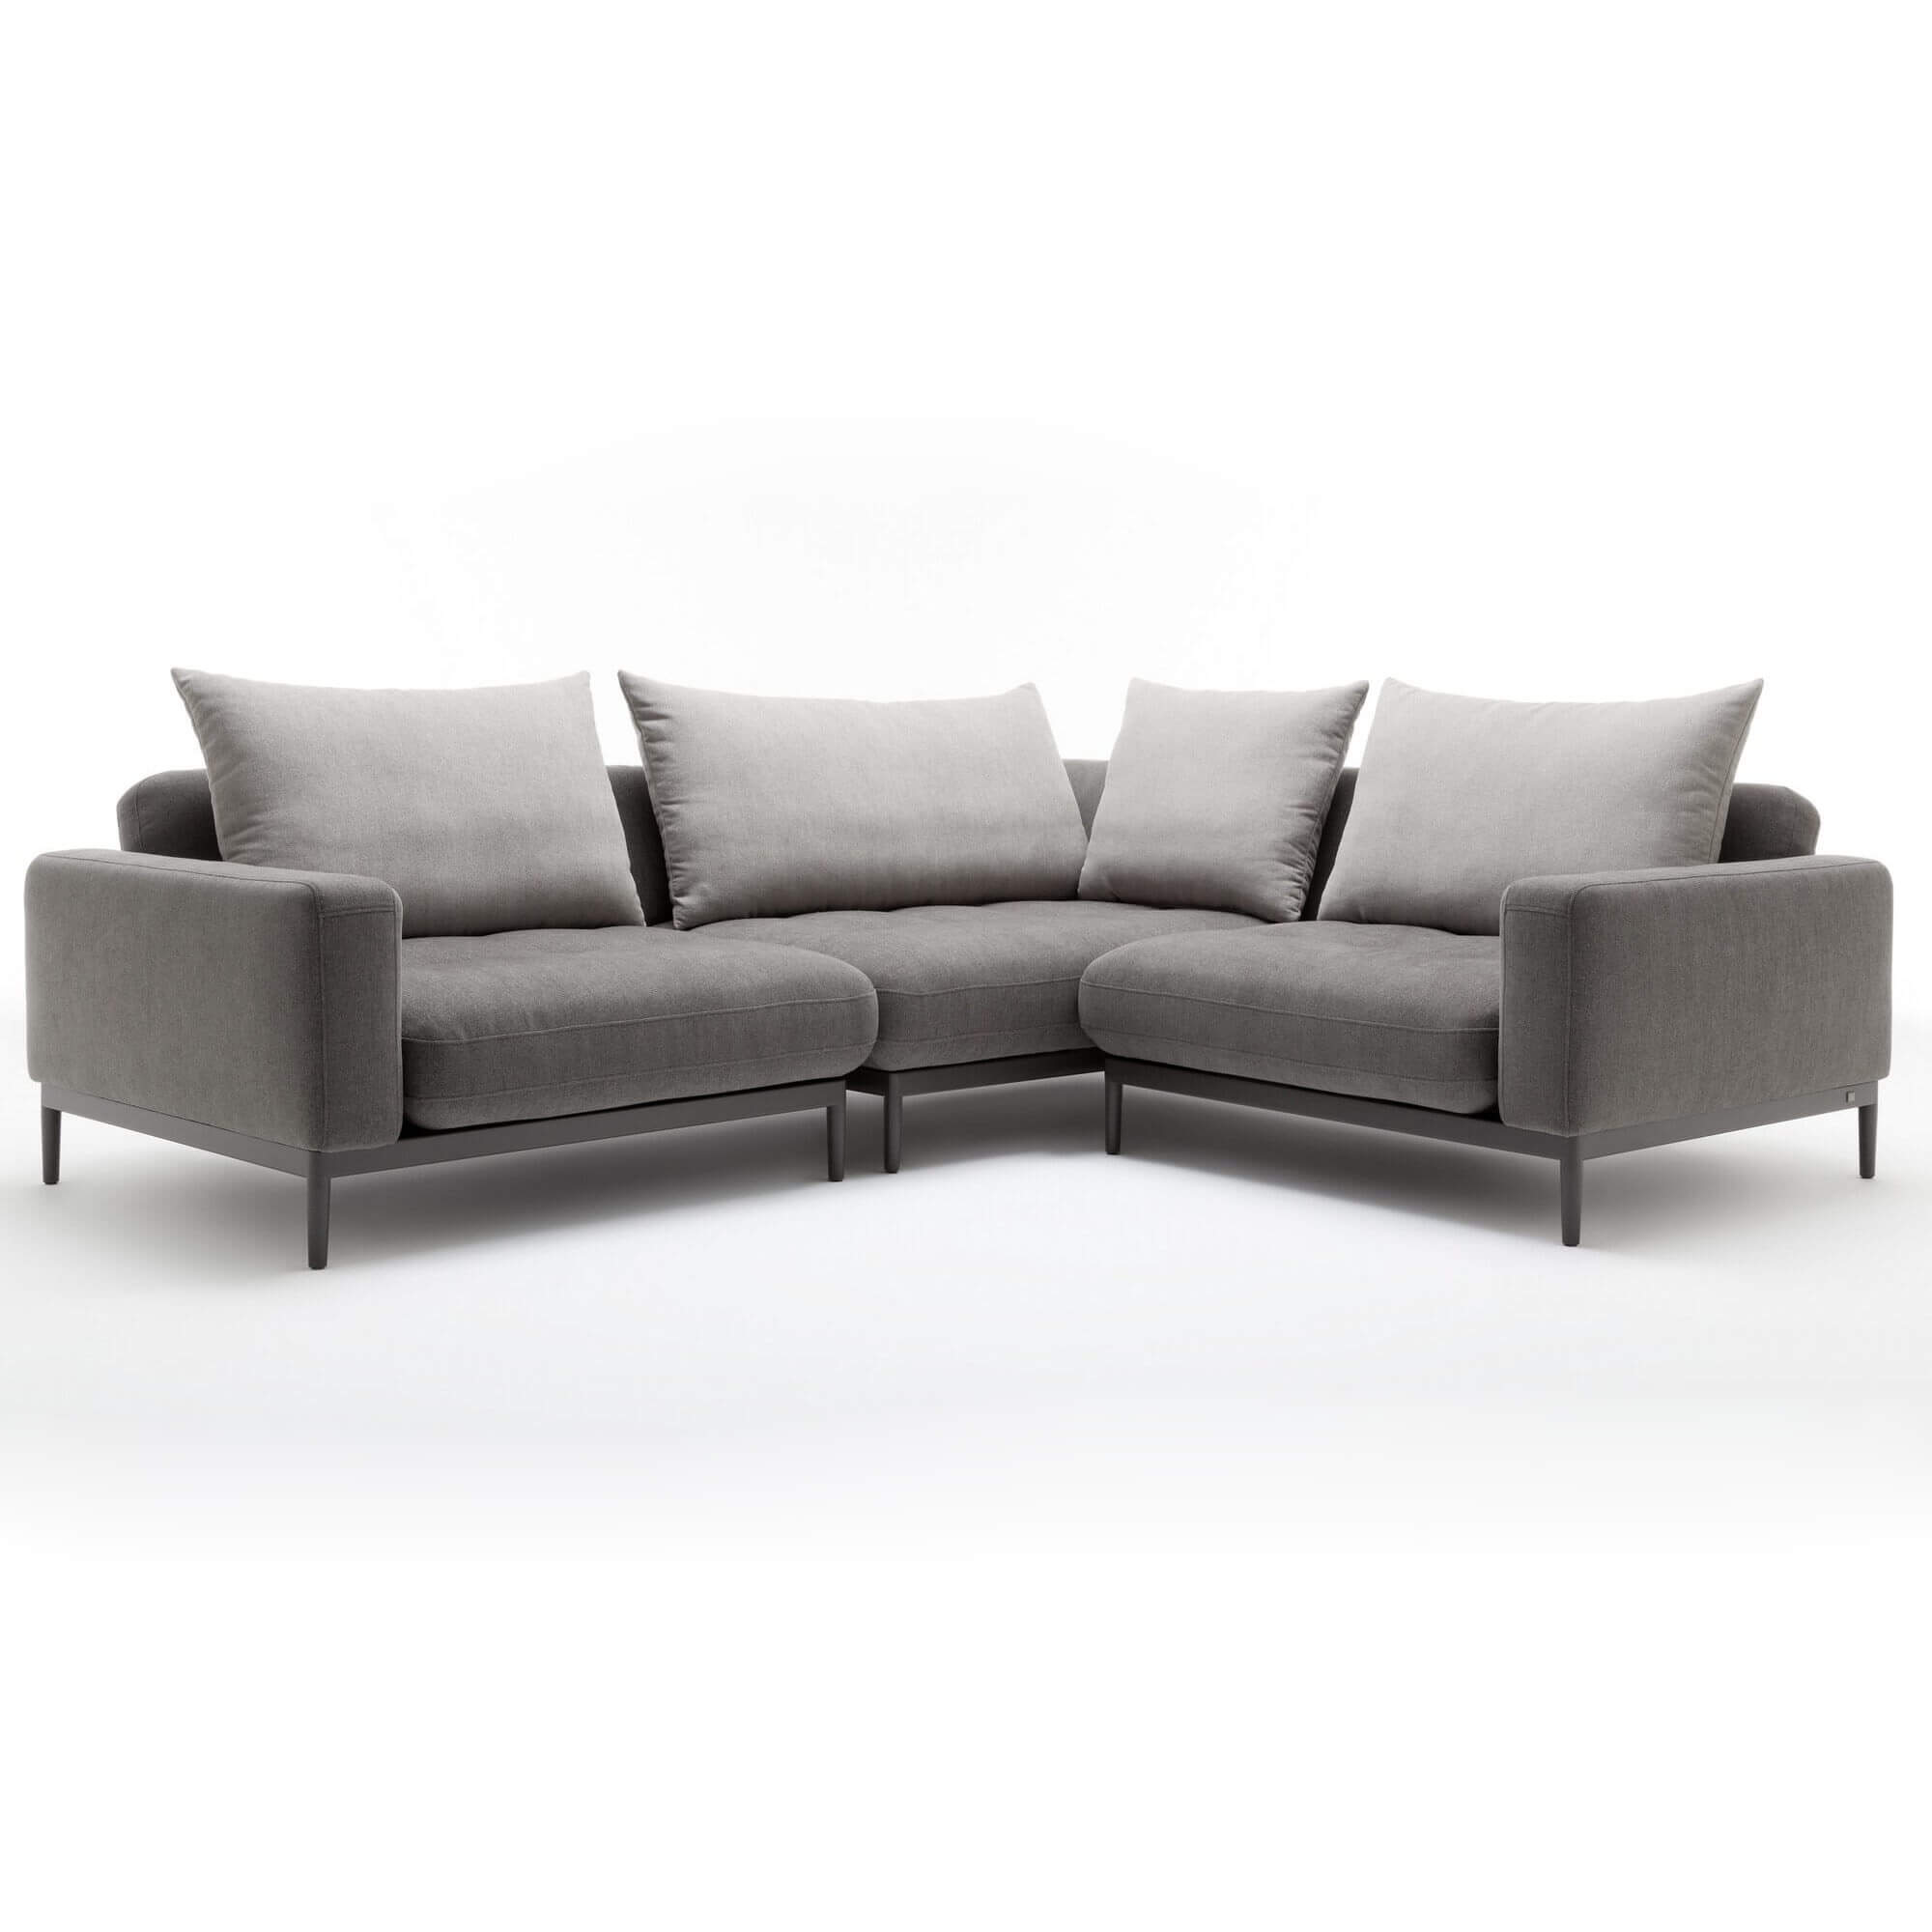 Кожаный диван в стиле хай-тек Rolf Benz Tira из Германии